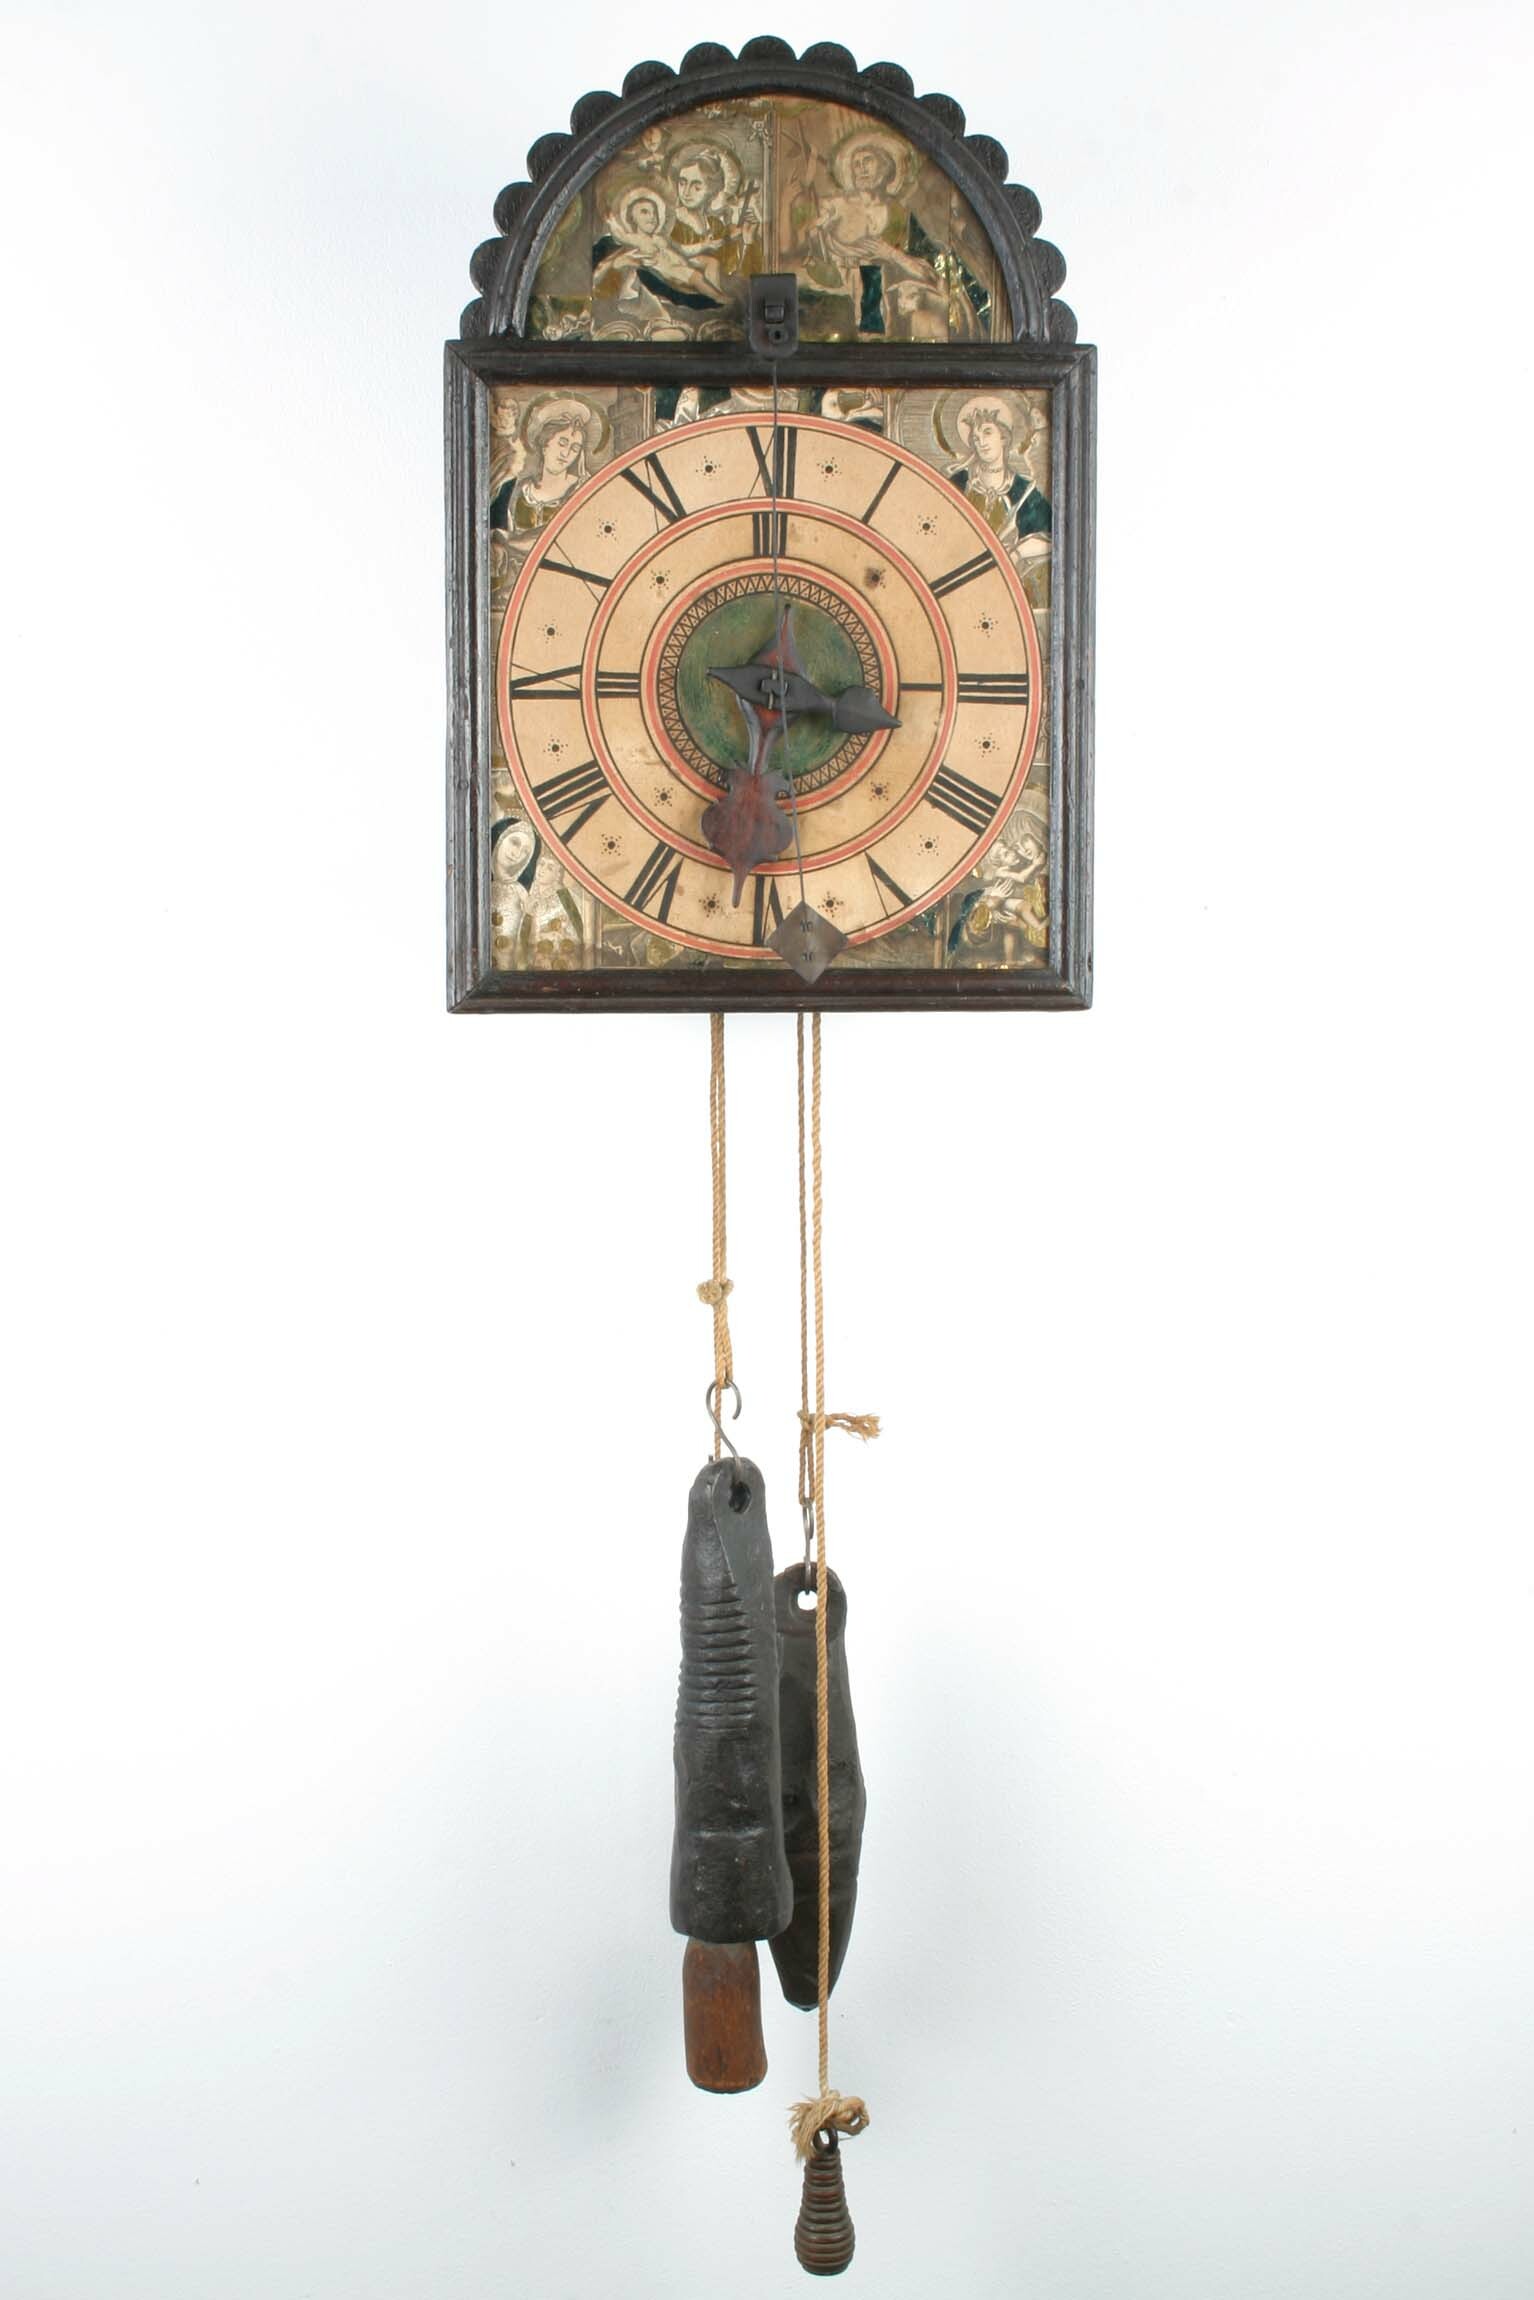 Holzräderuhr, Zeigeranordnung umgekehrt, Deggendorf (Bayern), um 1800 (Deutsches Uhrenmuseum CC BY-SA)